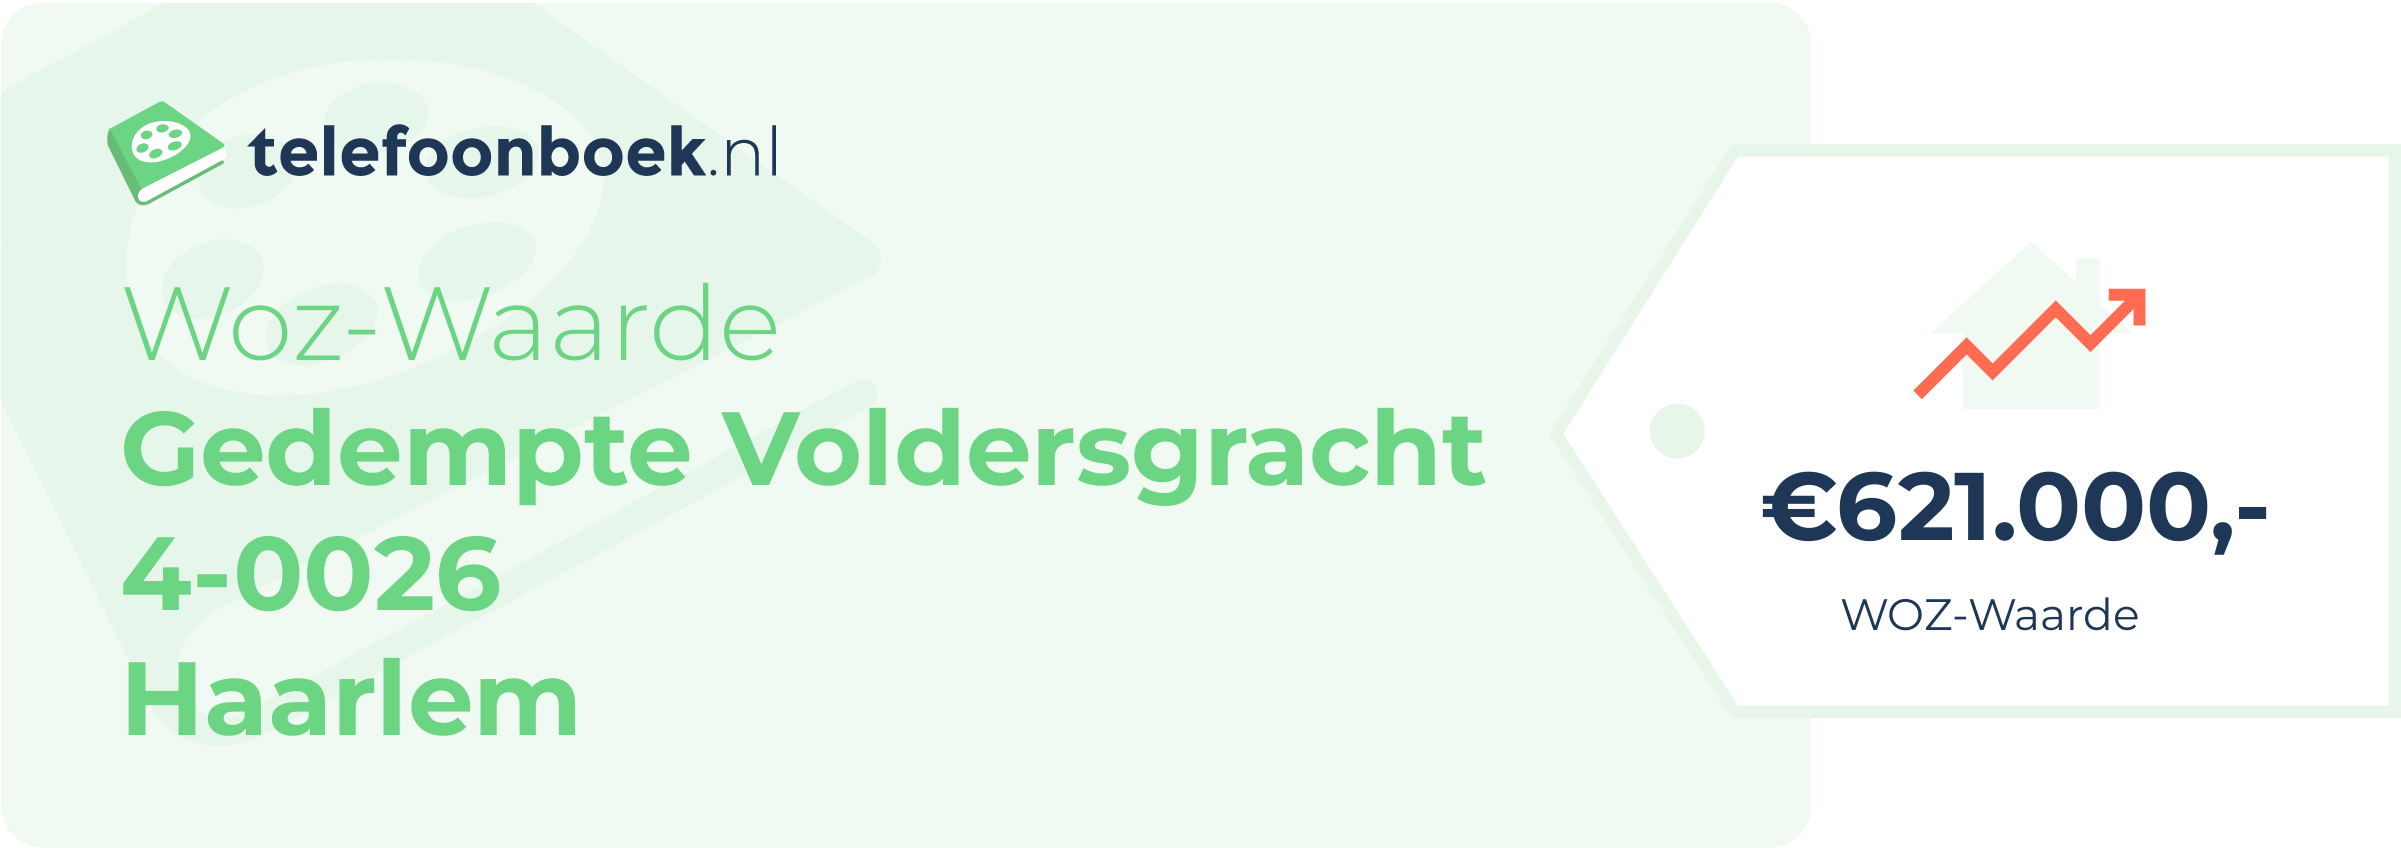 WOZ-waarde Gedempte Voldersgracht 4-0026 Haarlem